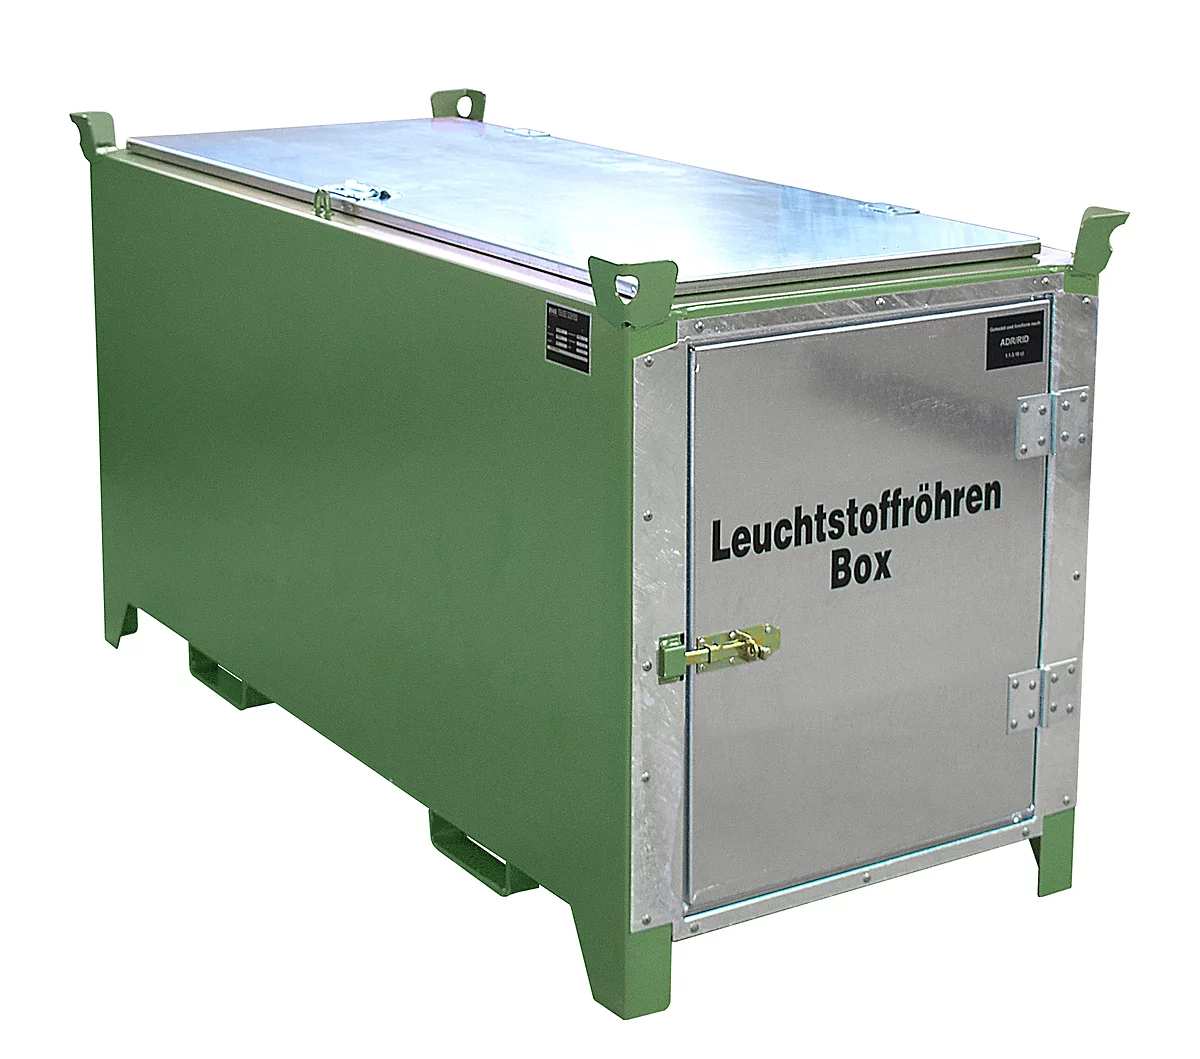 Leuchtstoffröhrenbox BAUER SL-D 200, Stahlblech, unterfahrbar, abschließbar, Tür/Deckel verzinkt, B 2100 x T 770 x H 975 mm, grün